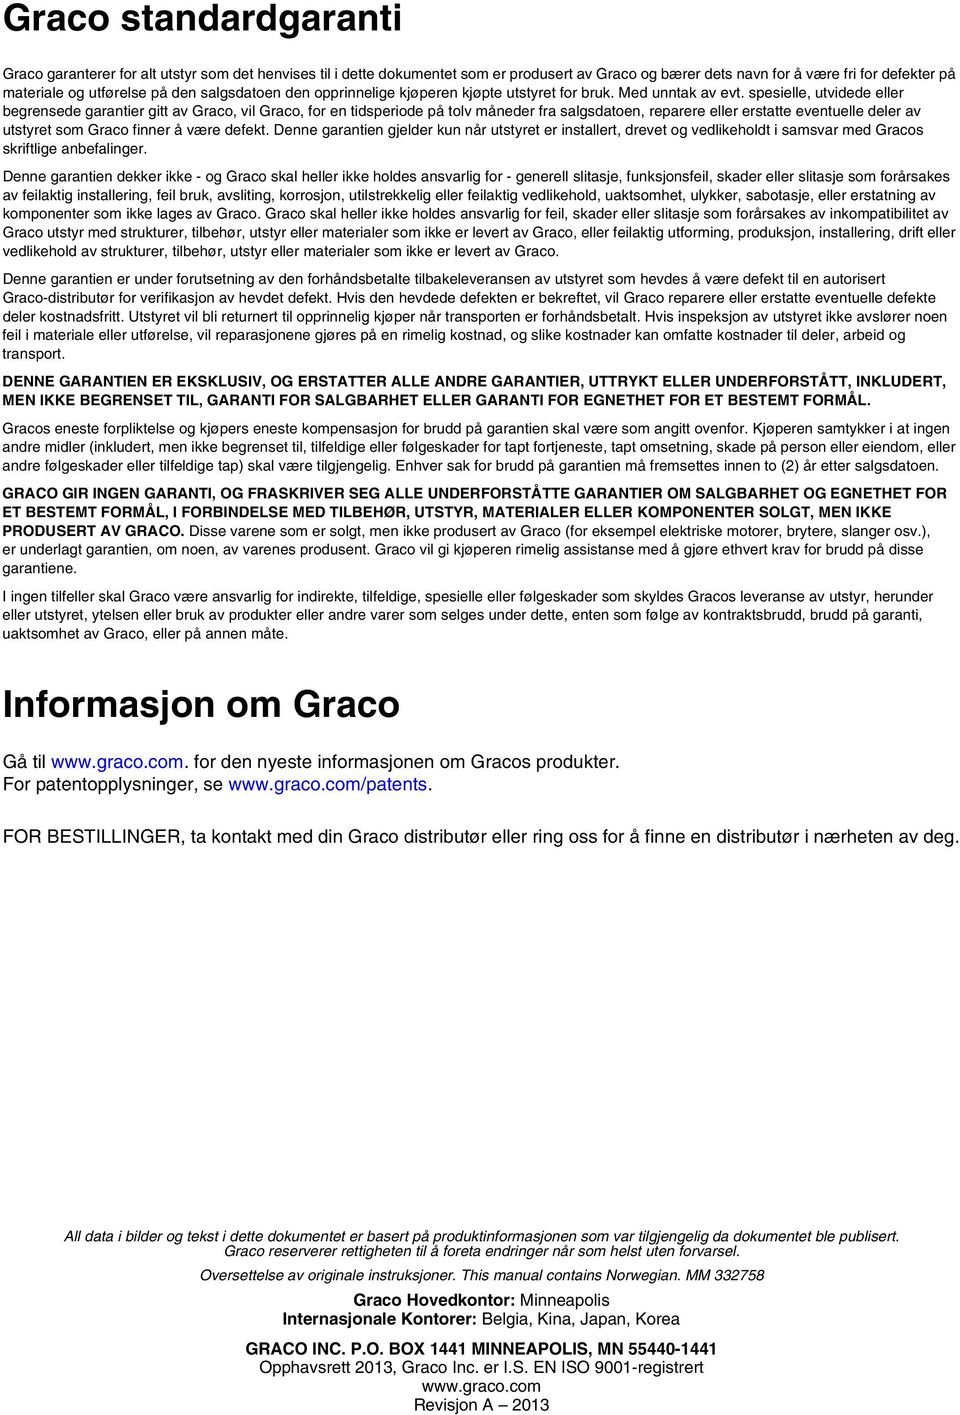 spesielle, utvidede eller begrensede garantier gitt av Graco, vil Graco, for en tidsperiode på tolv måneder fra salgsdatoen, reparere eller erstatte eventuelle deler av utstyret som Graco finner å